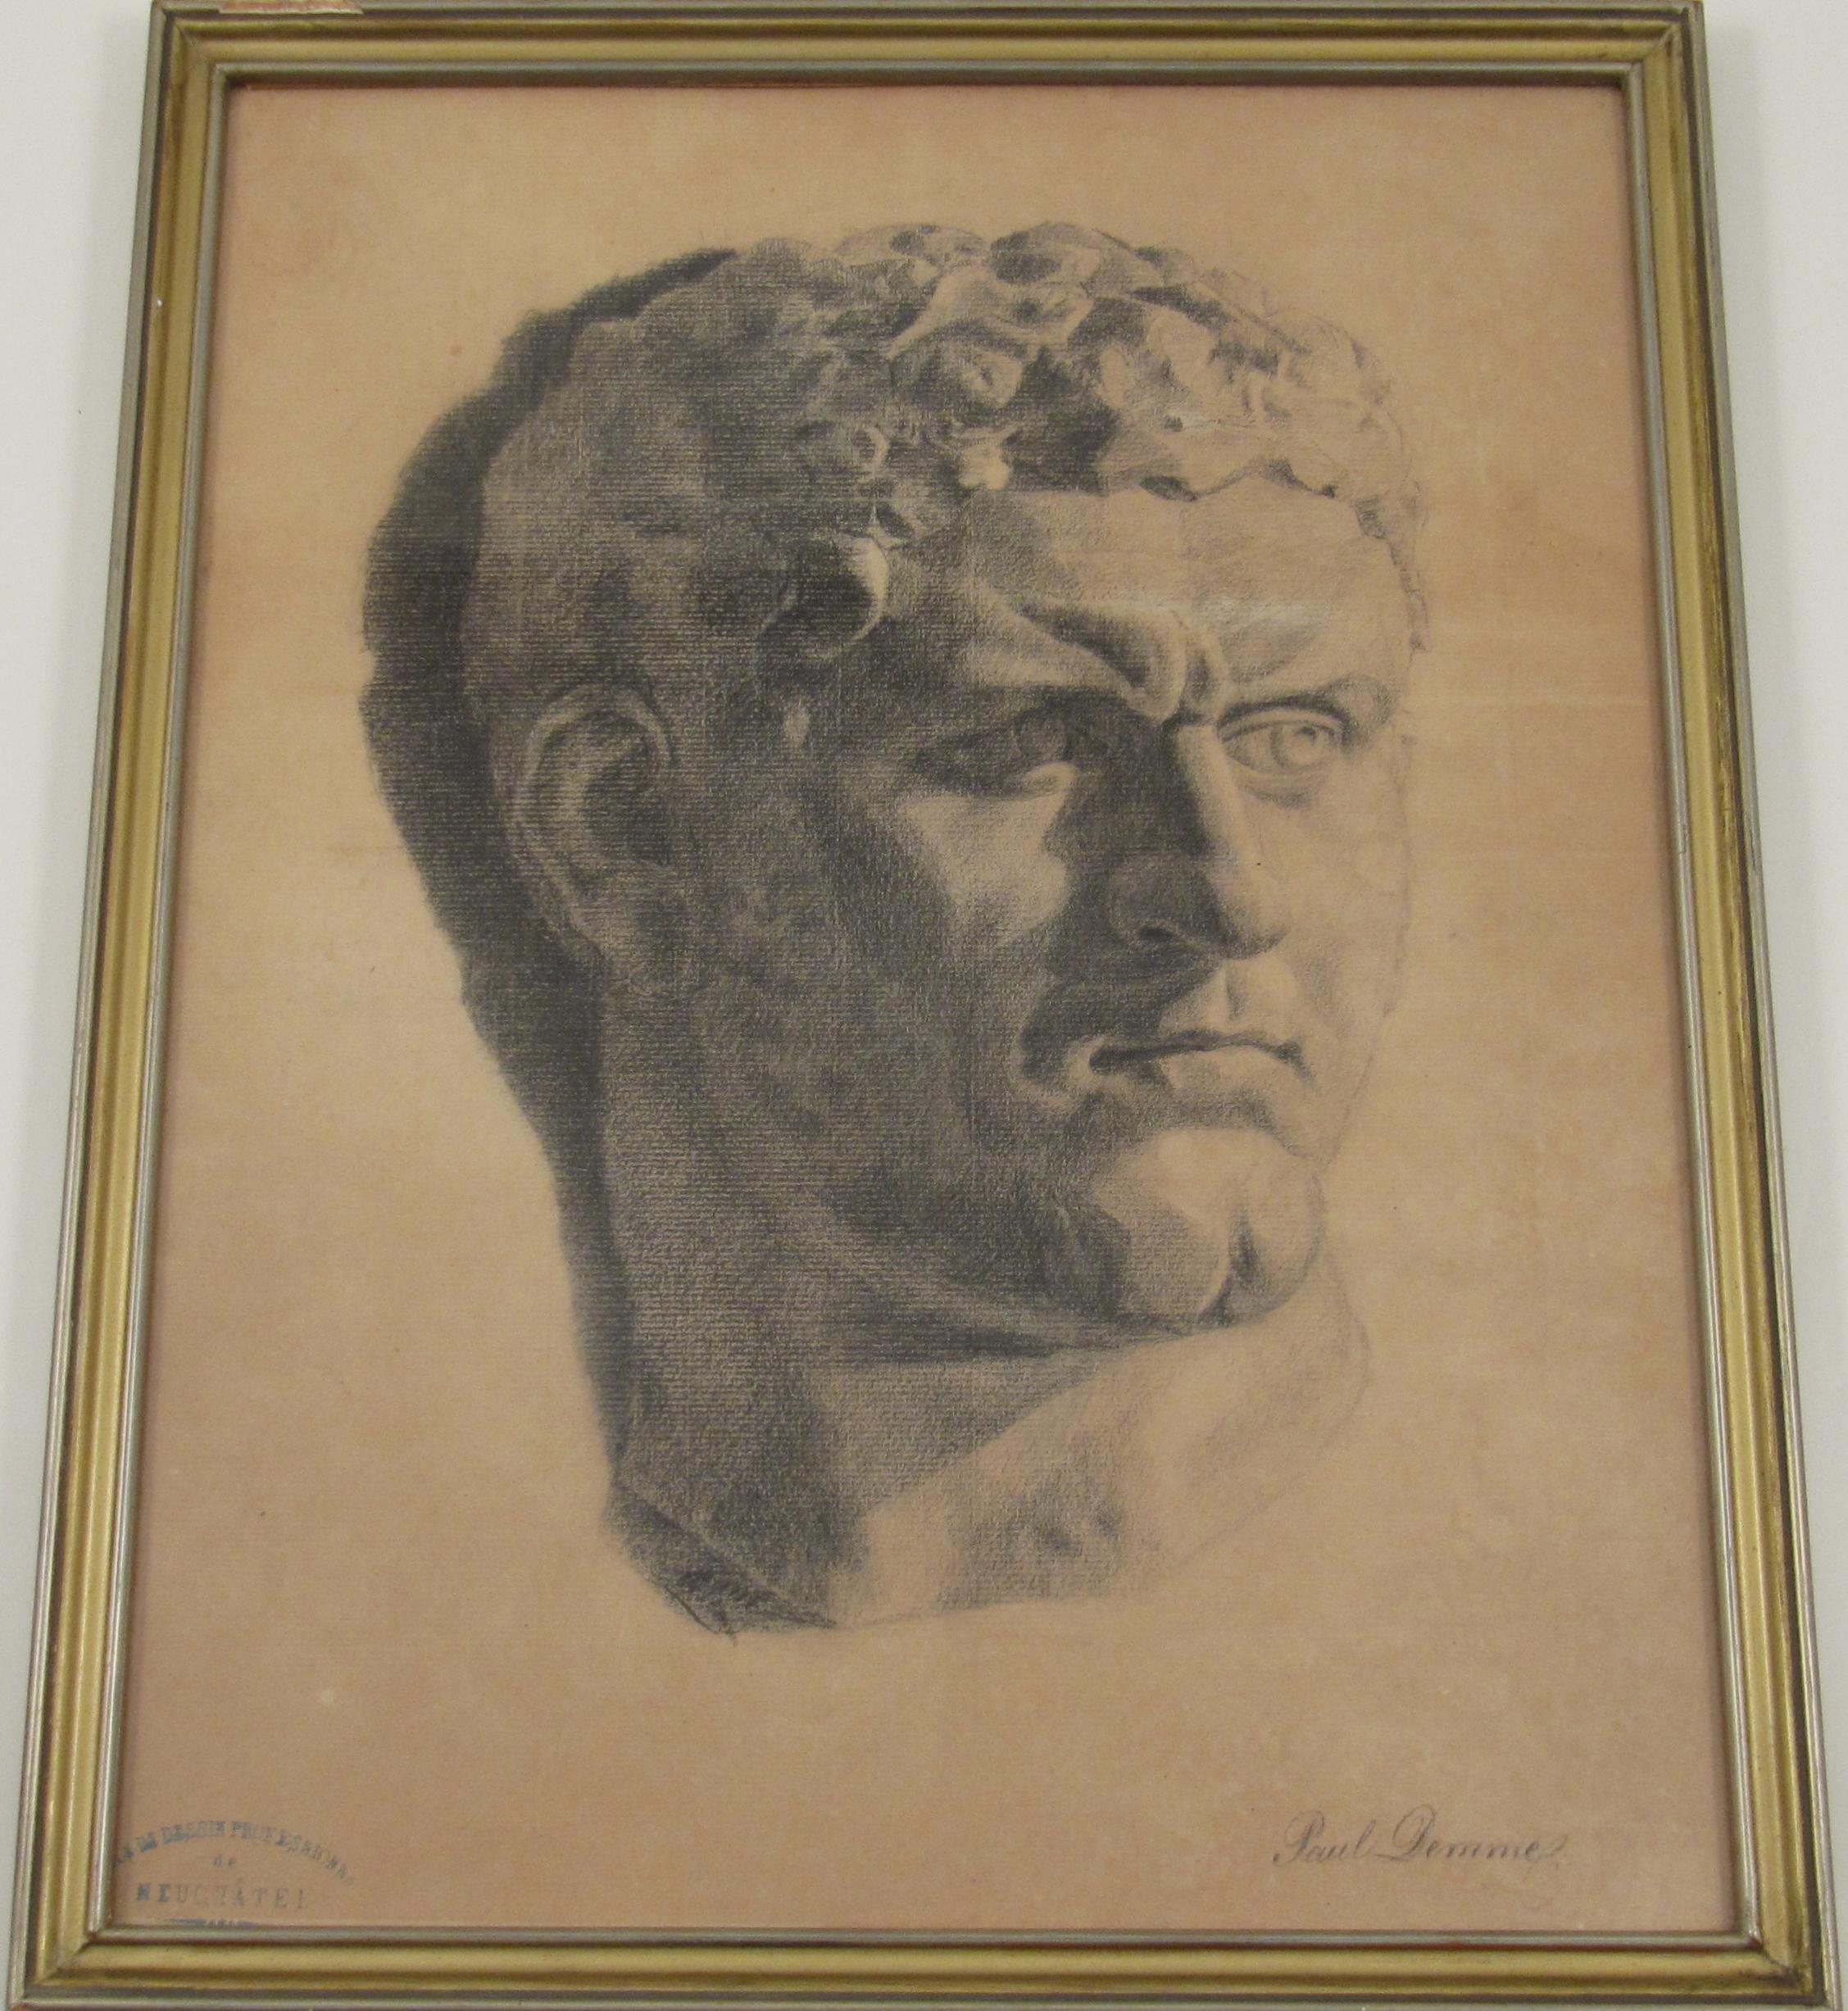 Paul Ascan Demmé Portrait - Paul Ascam Demmé (1866 - 1953) Classical Male Bust Pencil Drawing c. 1899